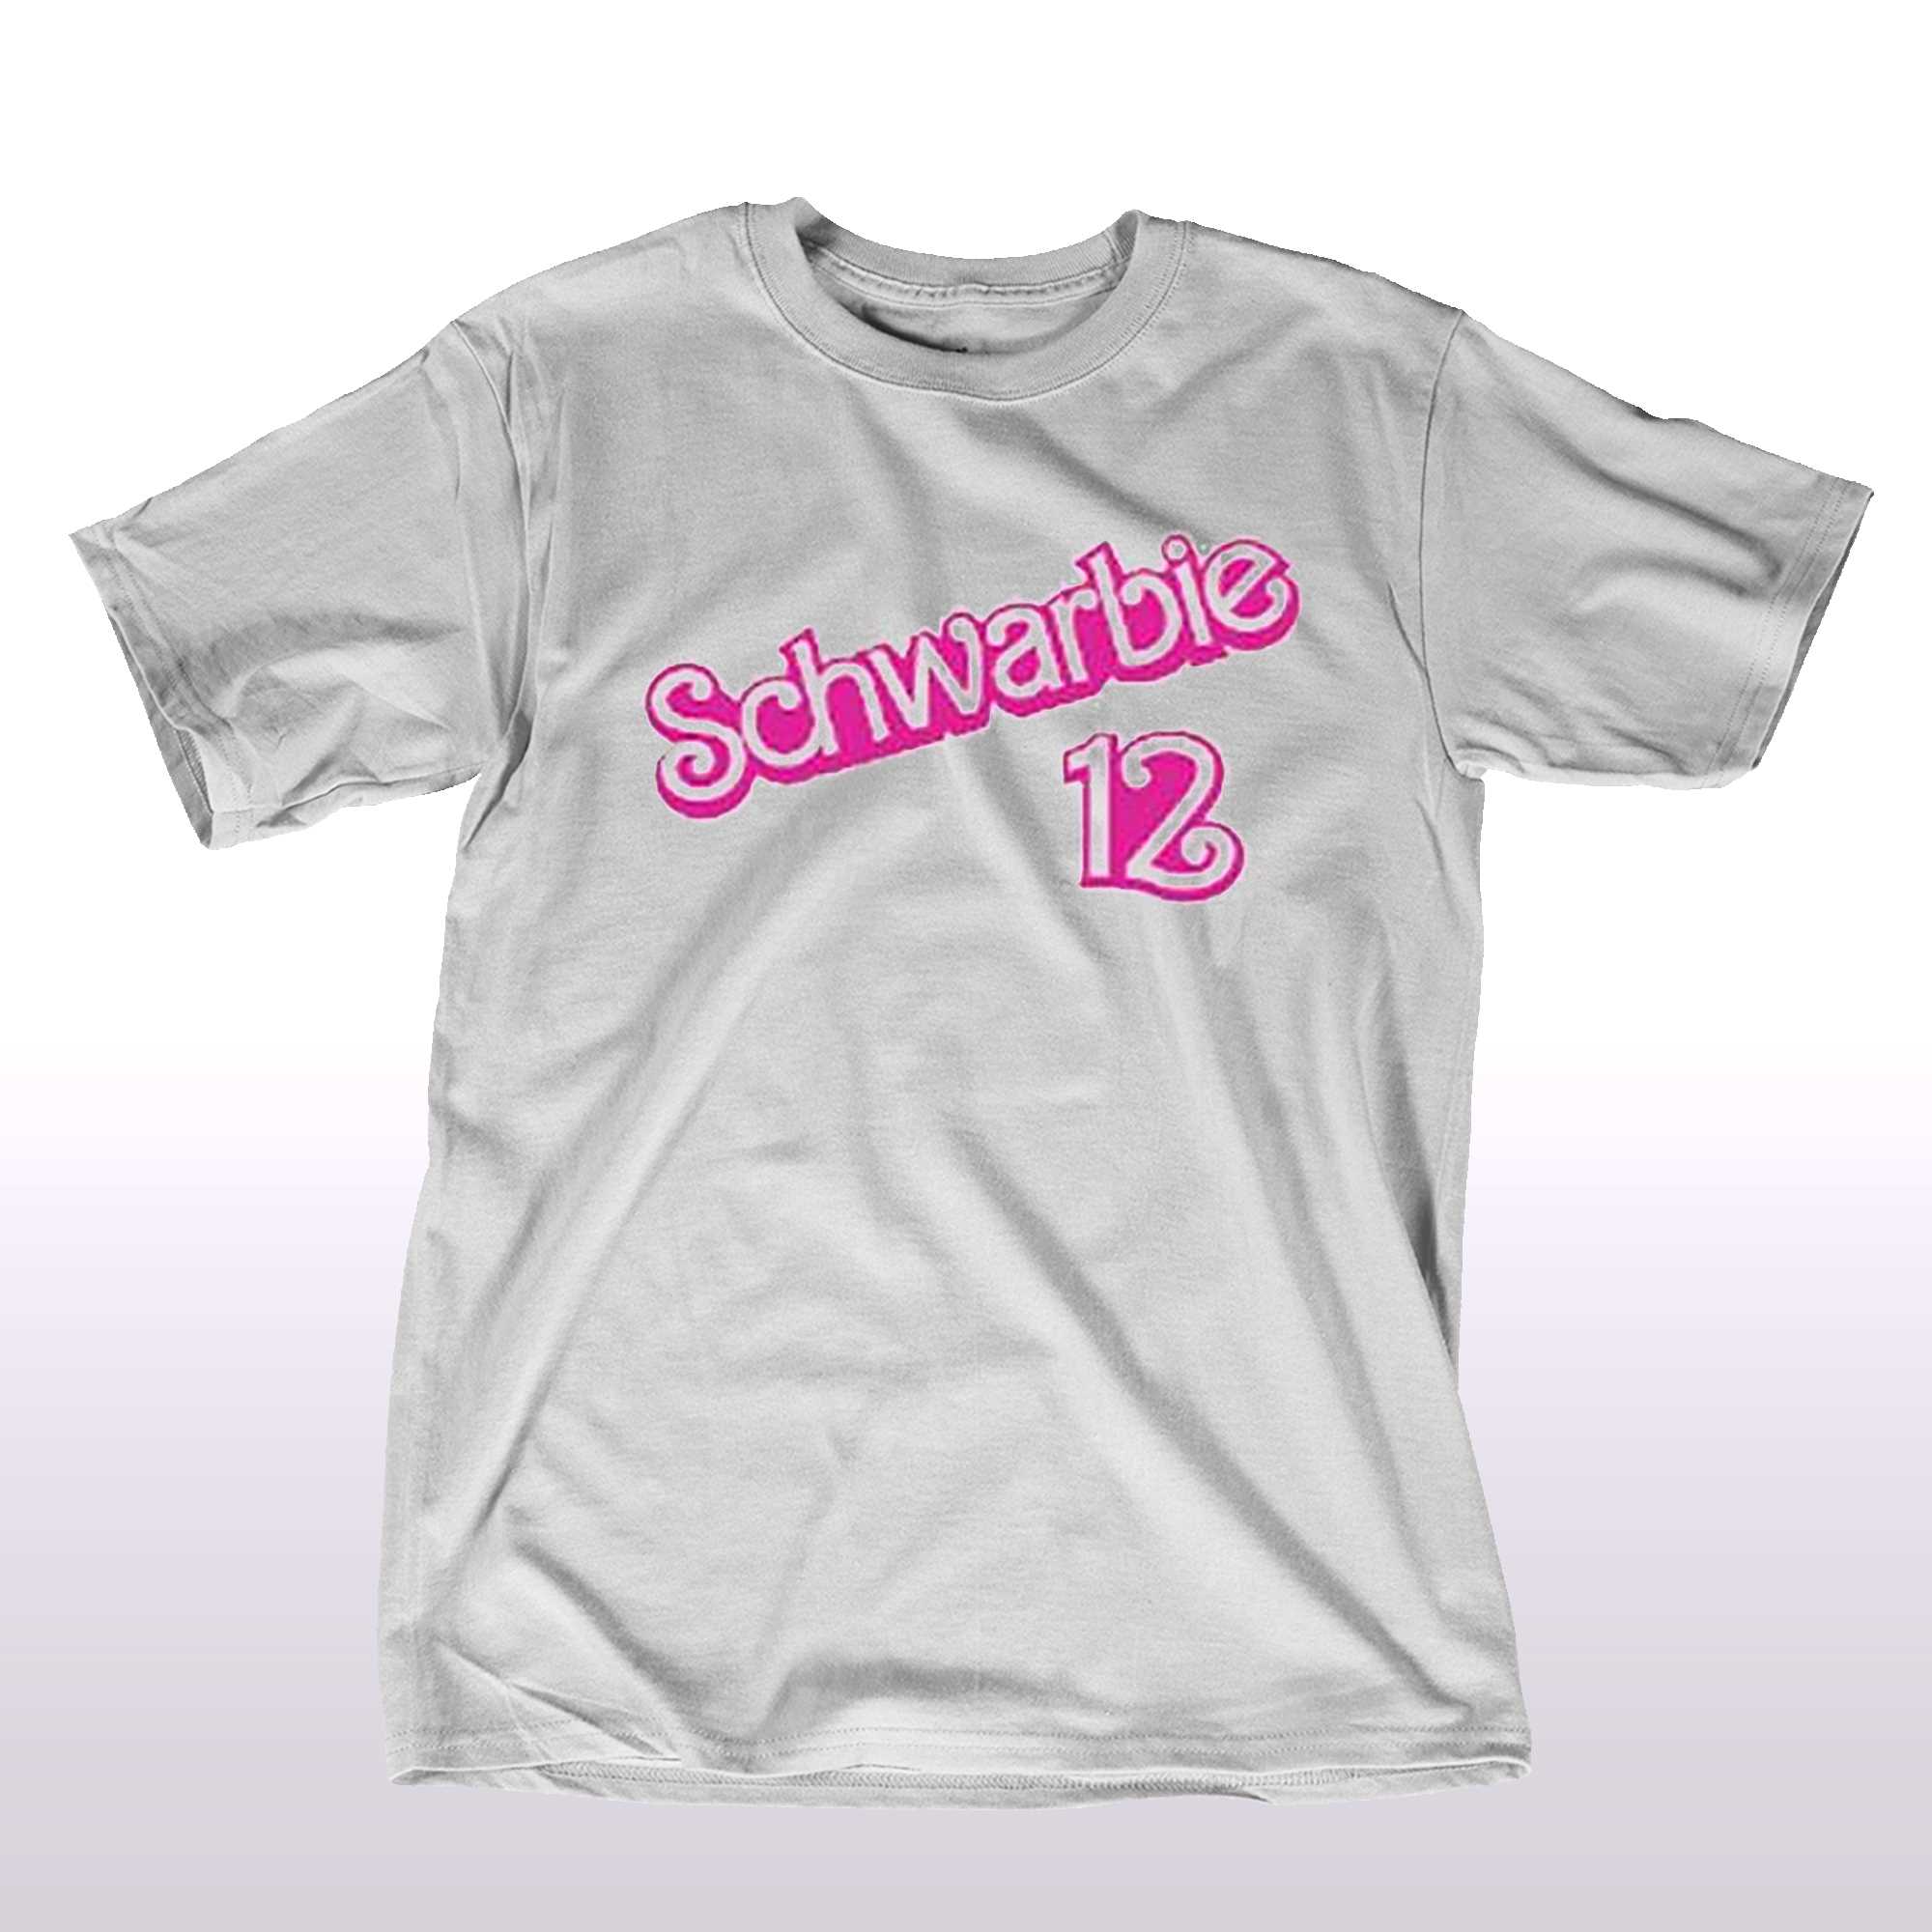 Schwarbie Barbie Shirt Sweatshirt Hoodie Mens Womens Kids